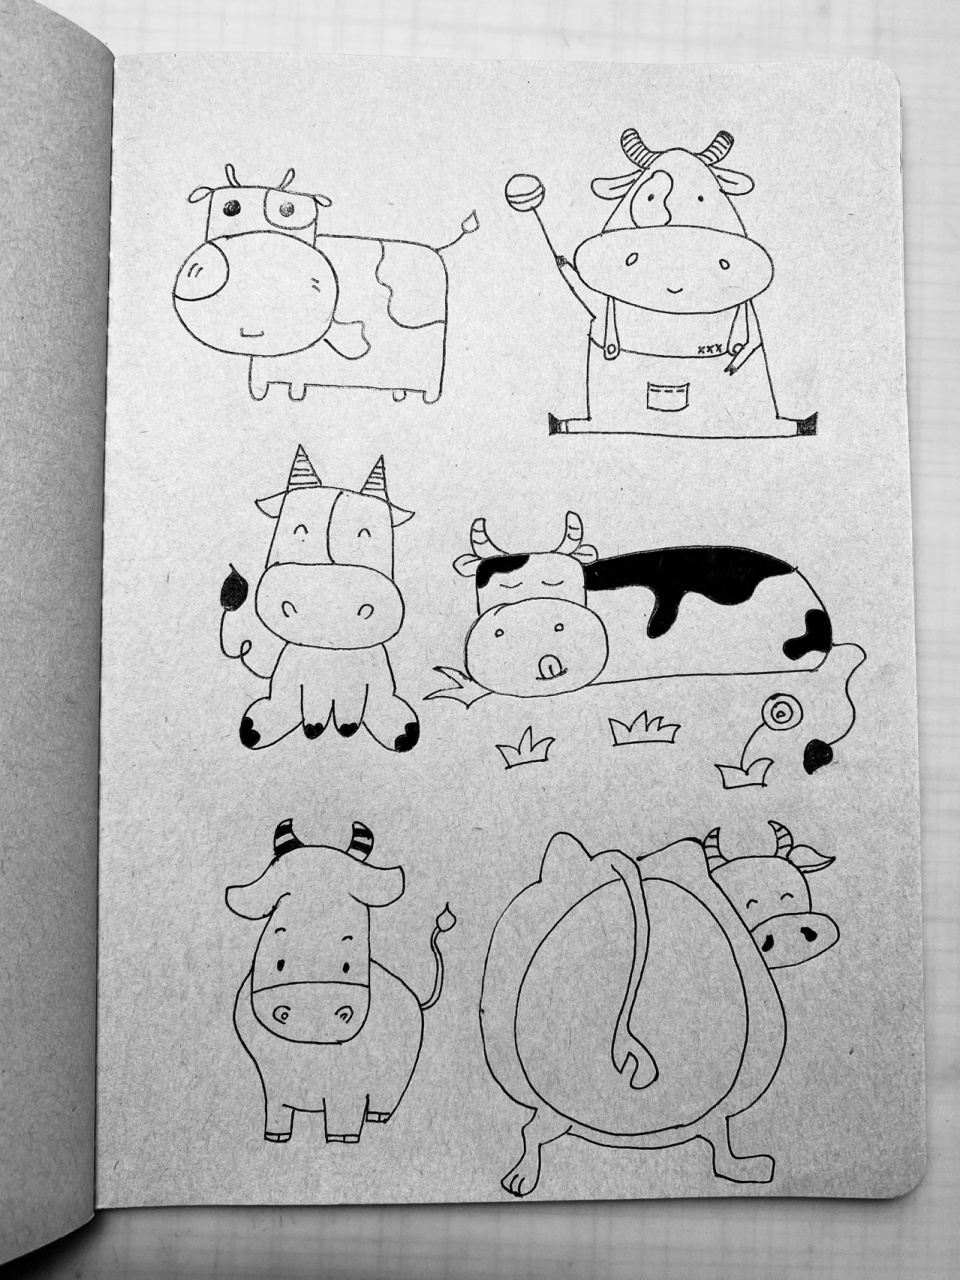 12生肖牛的简笔画简单图片